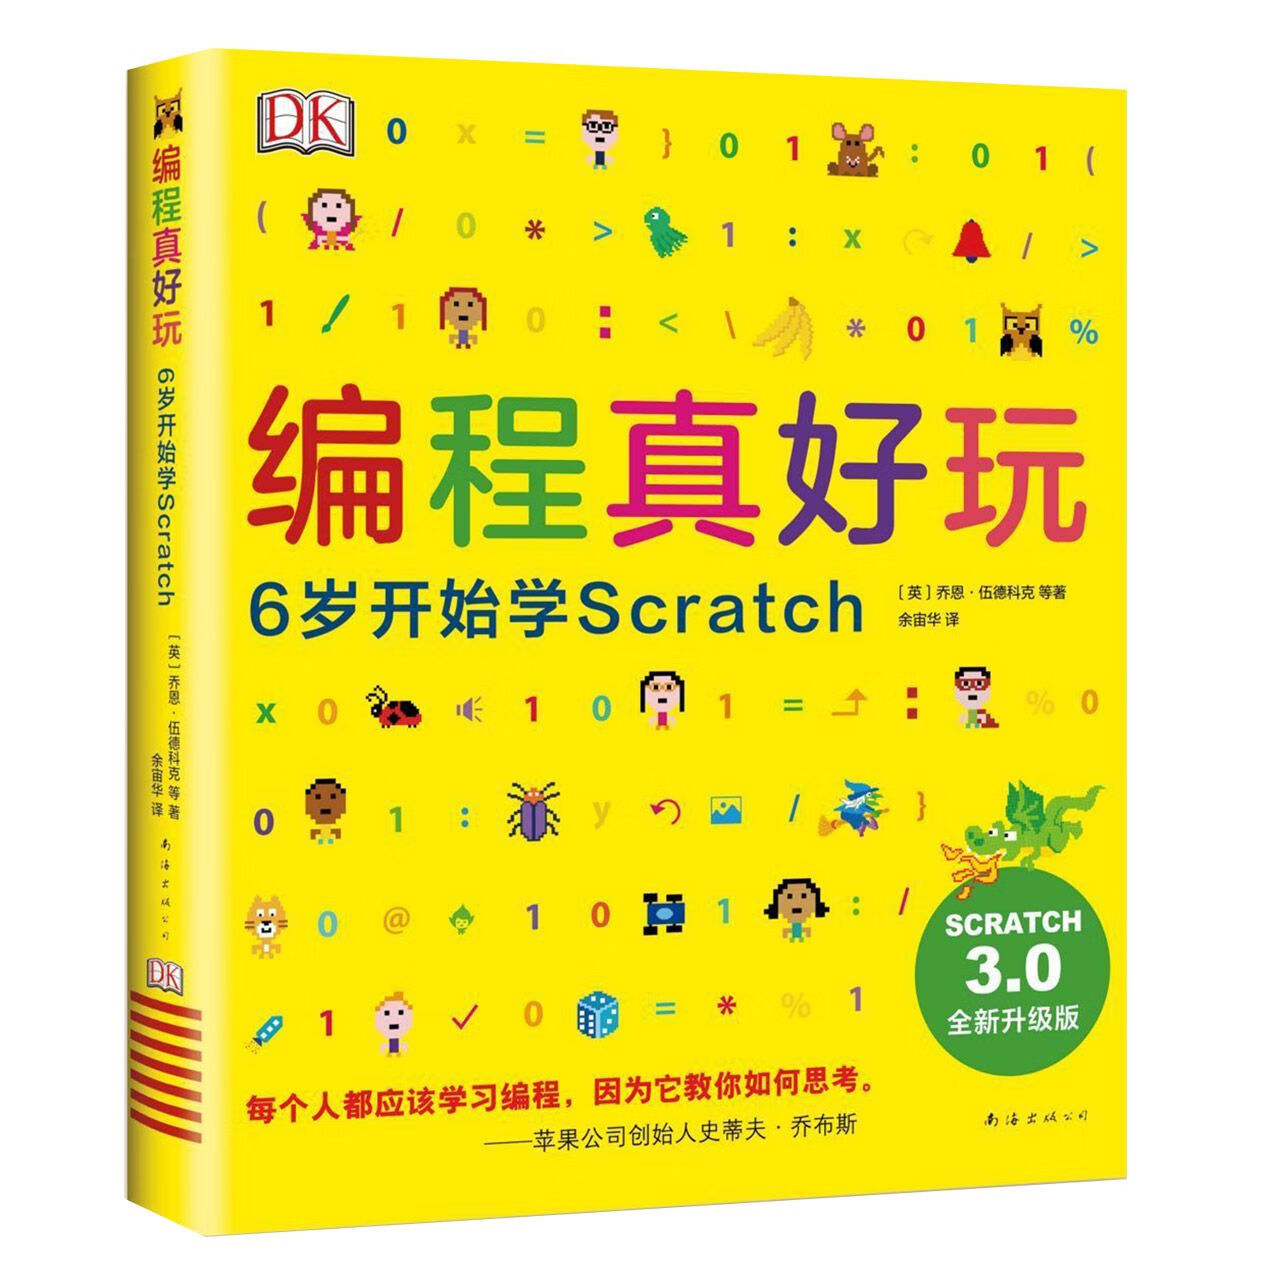 scratch3.0离线版软件下载 编程真好玩 官网正品无激活无捆绑